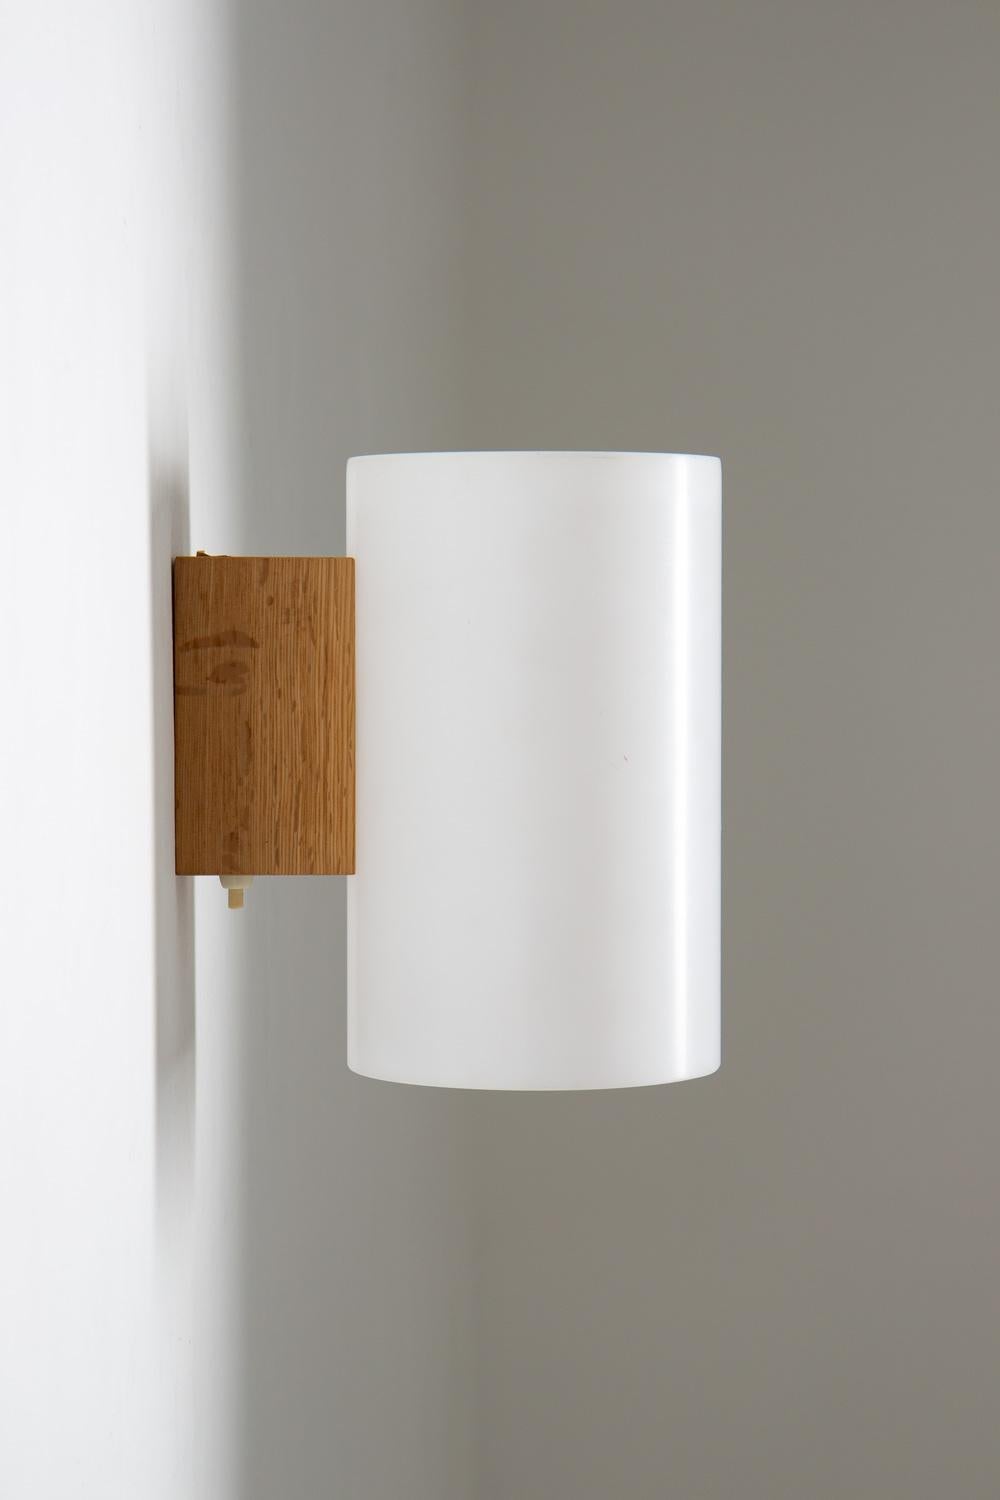 Bringen Sie einen Hauch von skandinavischem Stil in Ihr Zuhause mit diesen schönen Wandlampen von Uno & Östen Kristianson für Luxus, Schweden. Die Lampen sind aus Eichenholz gefertigt und haben weiße Plexiglasschirme, die das Licht streuen und ein